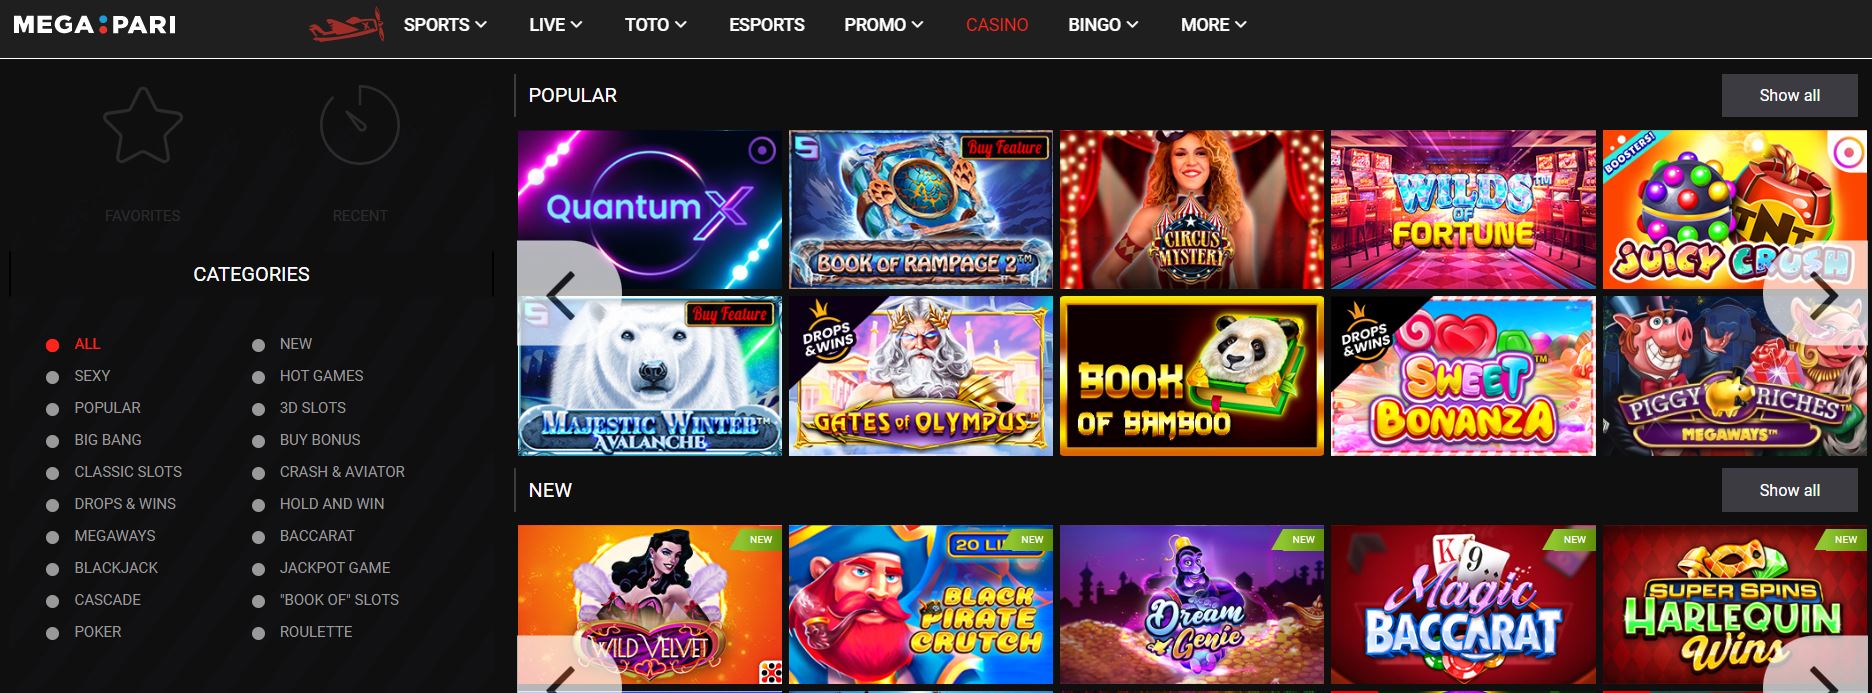 Megapari online casino